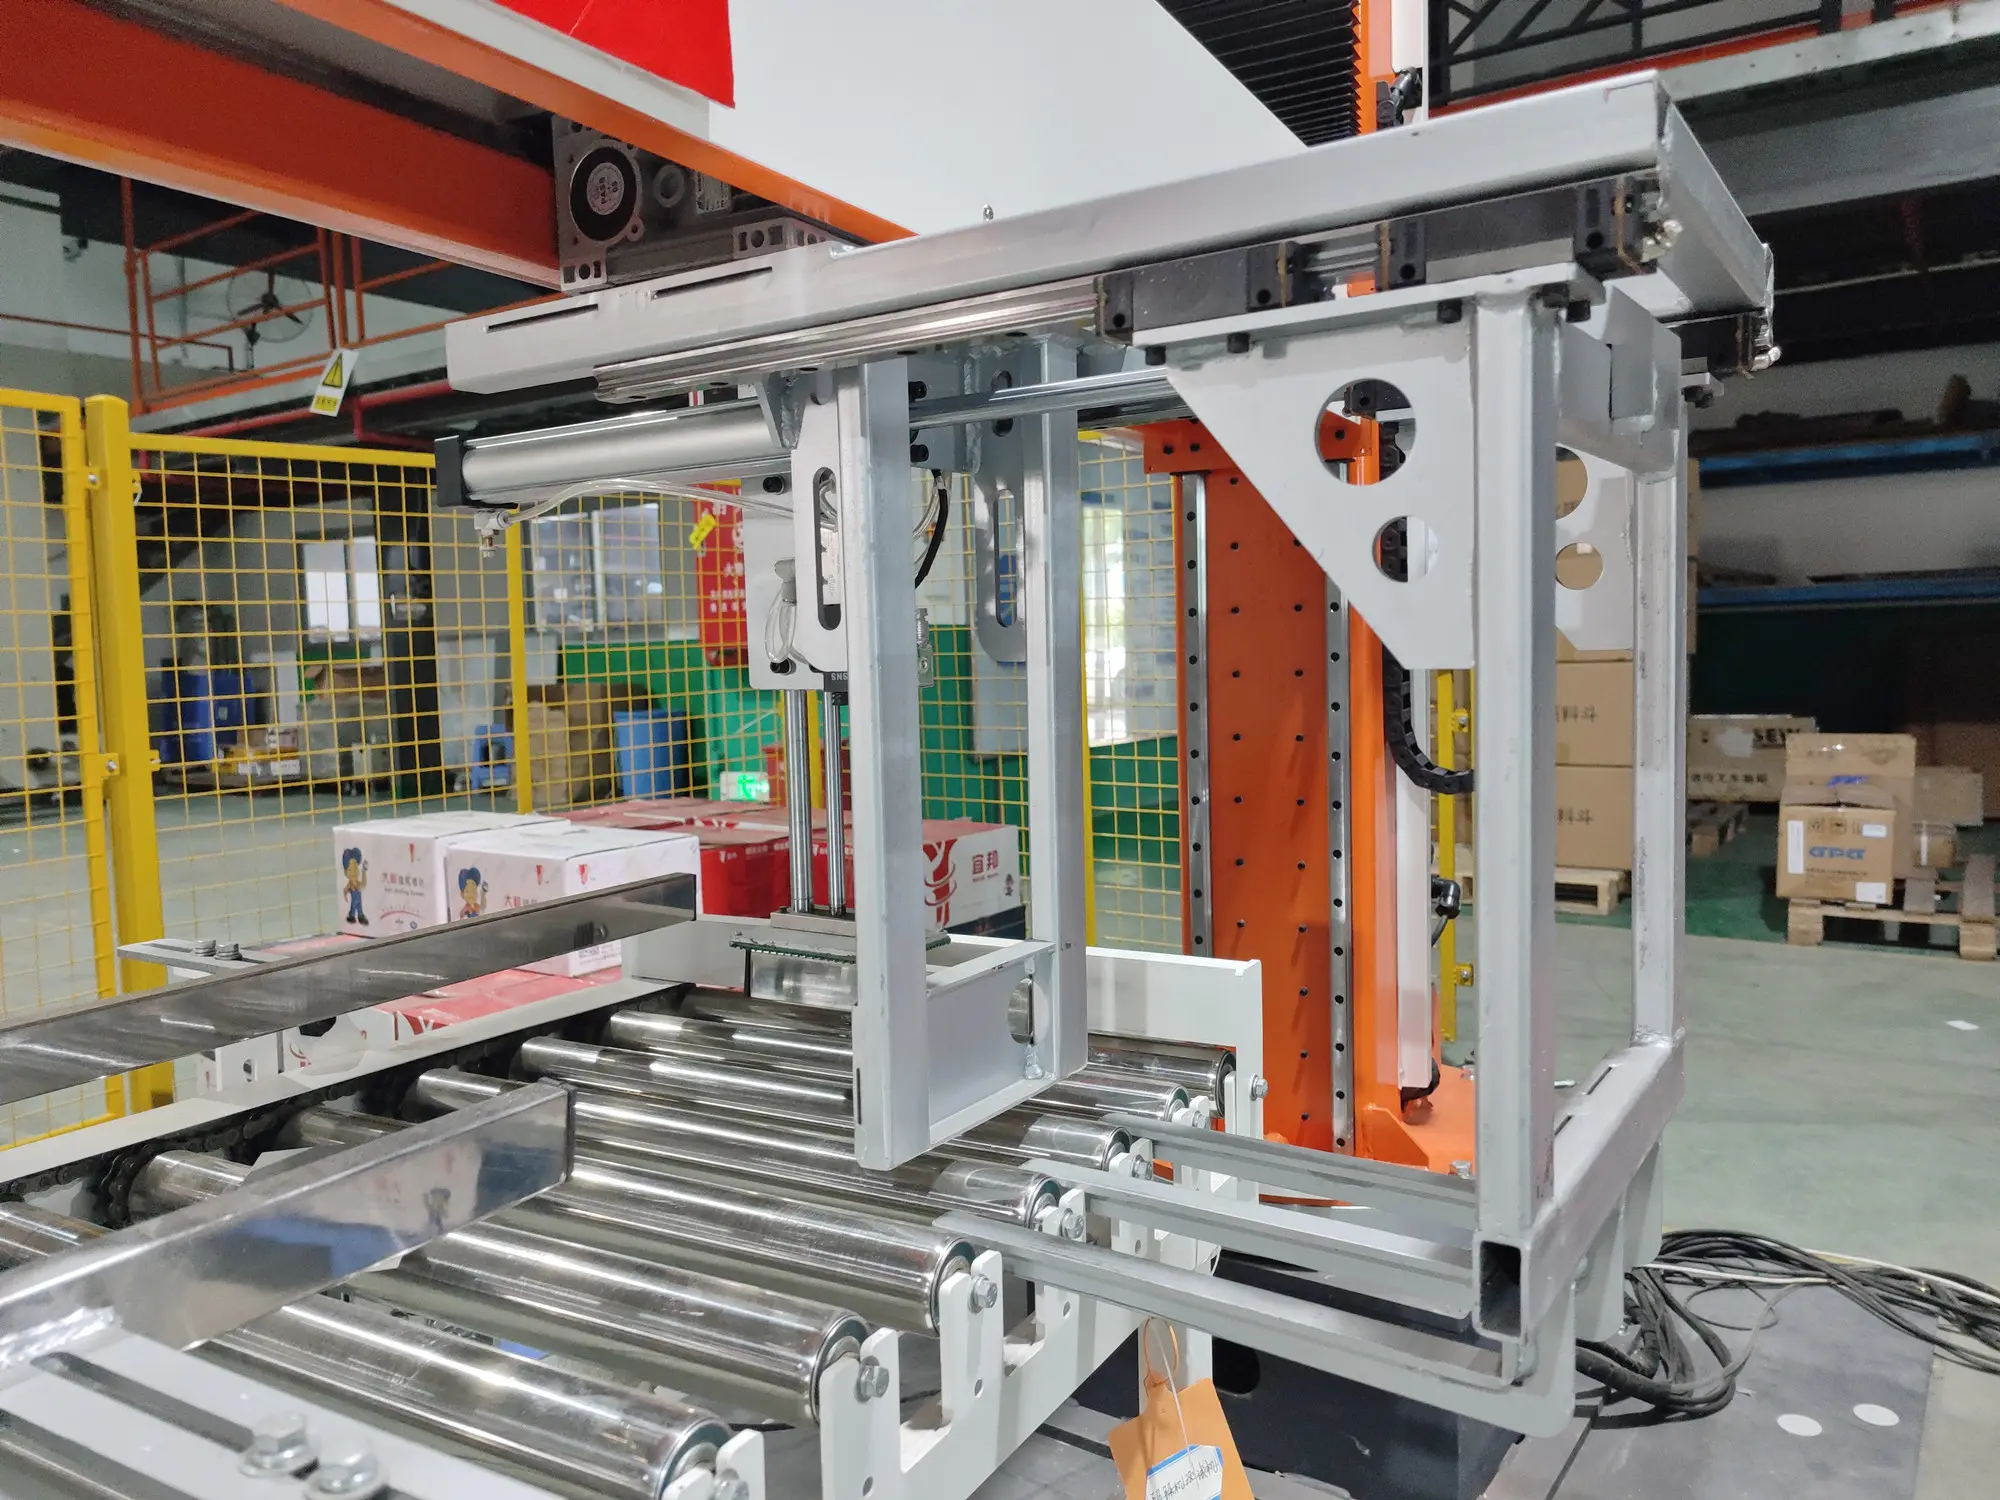 Focus Machines Hot Verkopen Hoge Productiviteit Industriële Robot Palletizer Voor Kartonnen Doos Tas